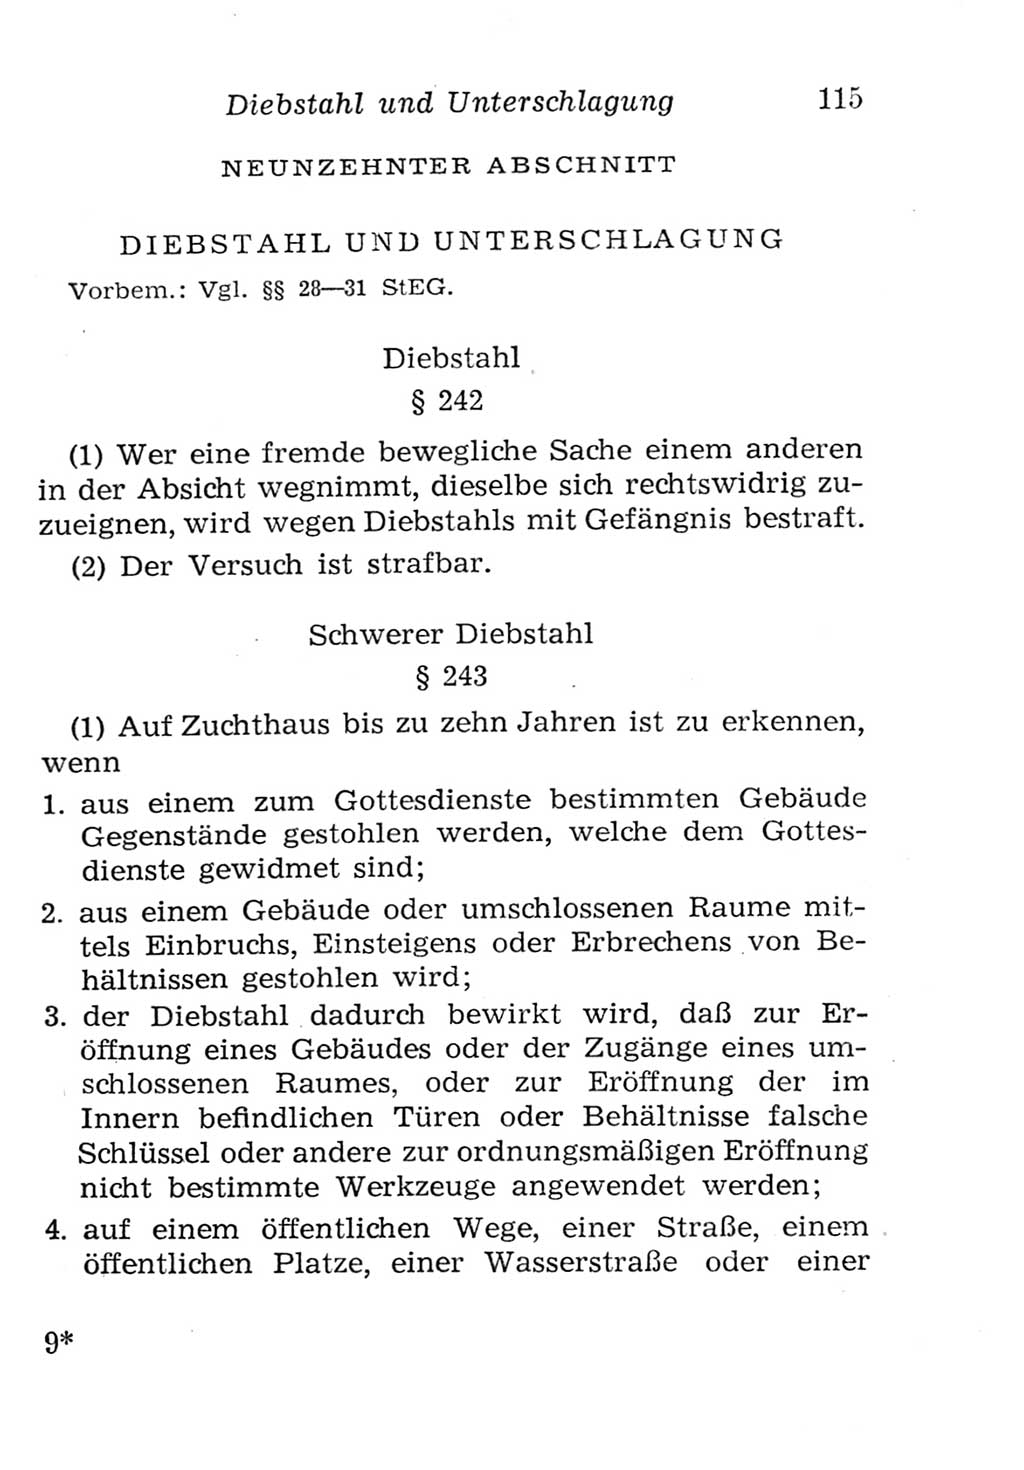 Strafgesetzbuch (StGB) und andere Strafgesetze [Deutsche Demokratische Republik (DDR)] 1957, Seite 115 (StGB Strafges. DDR 1957, S. 115)